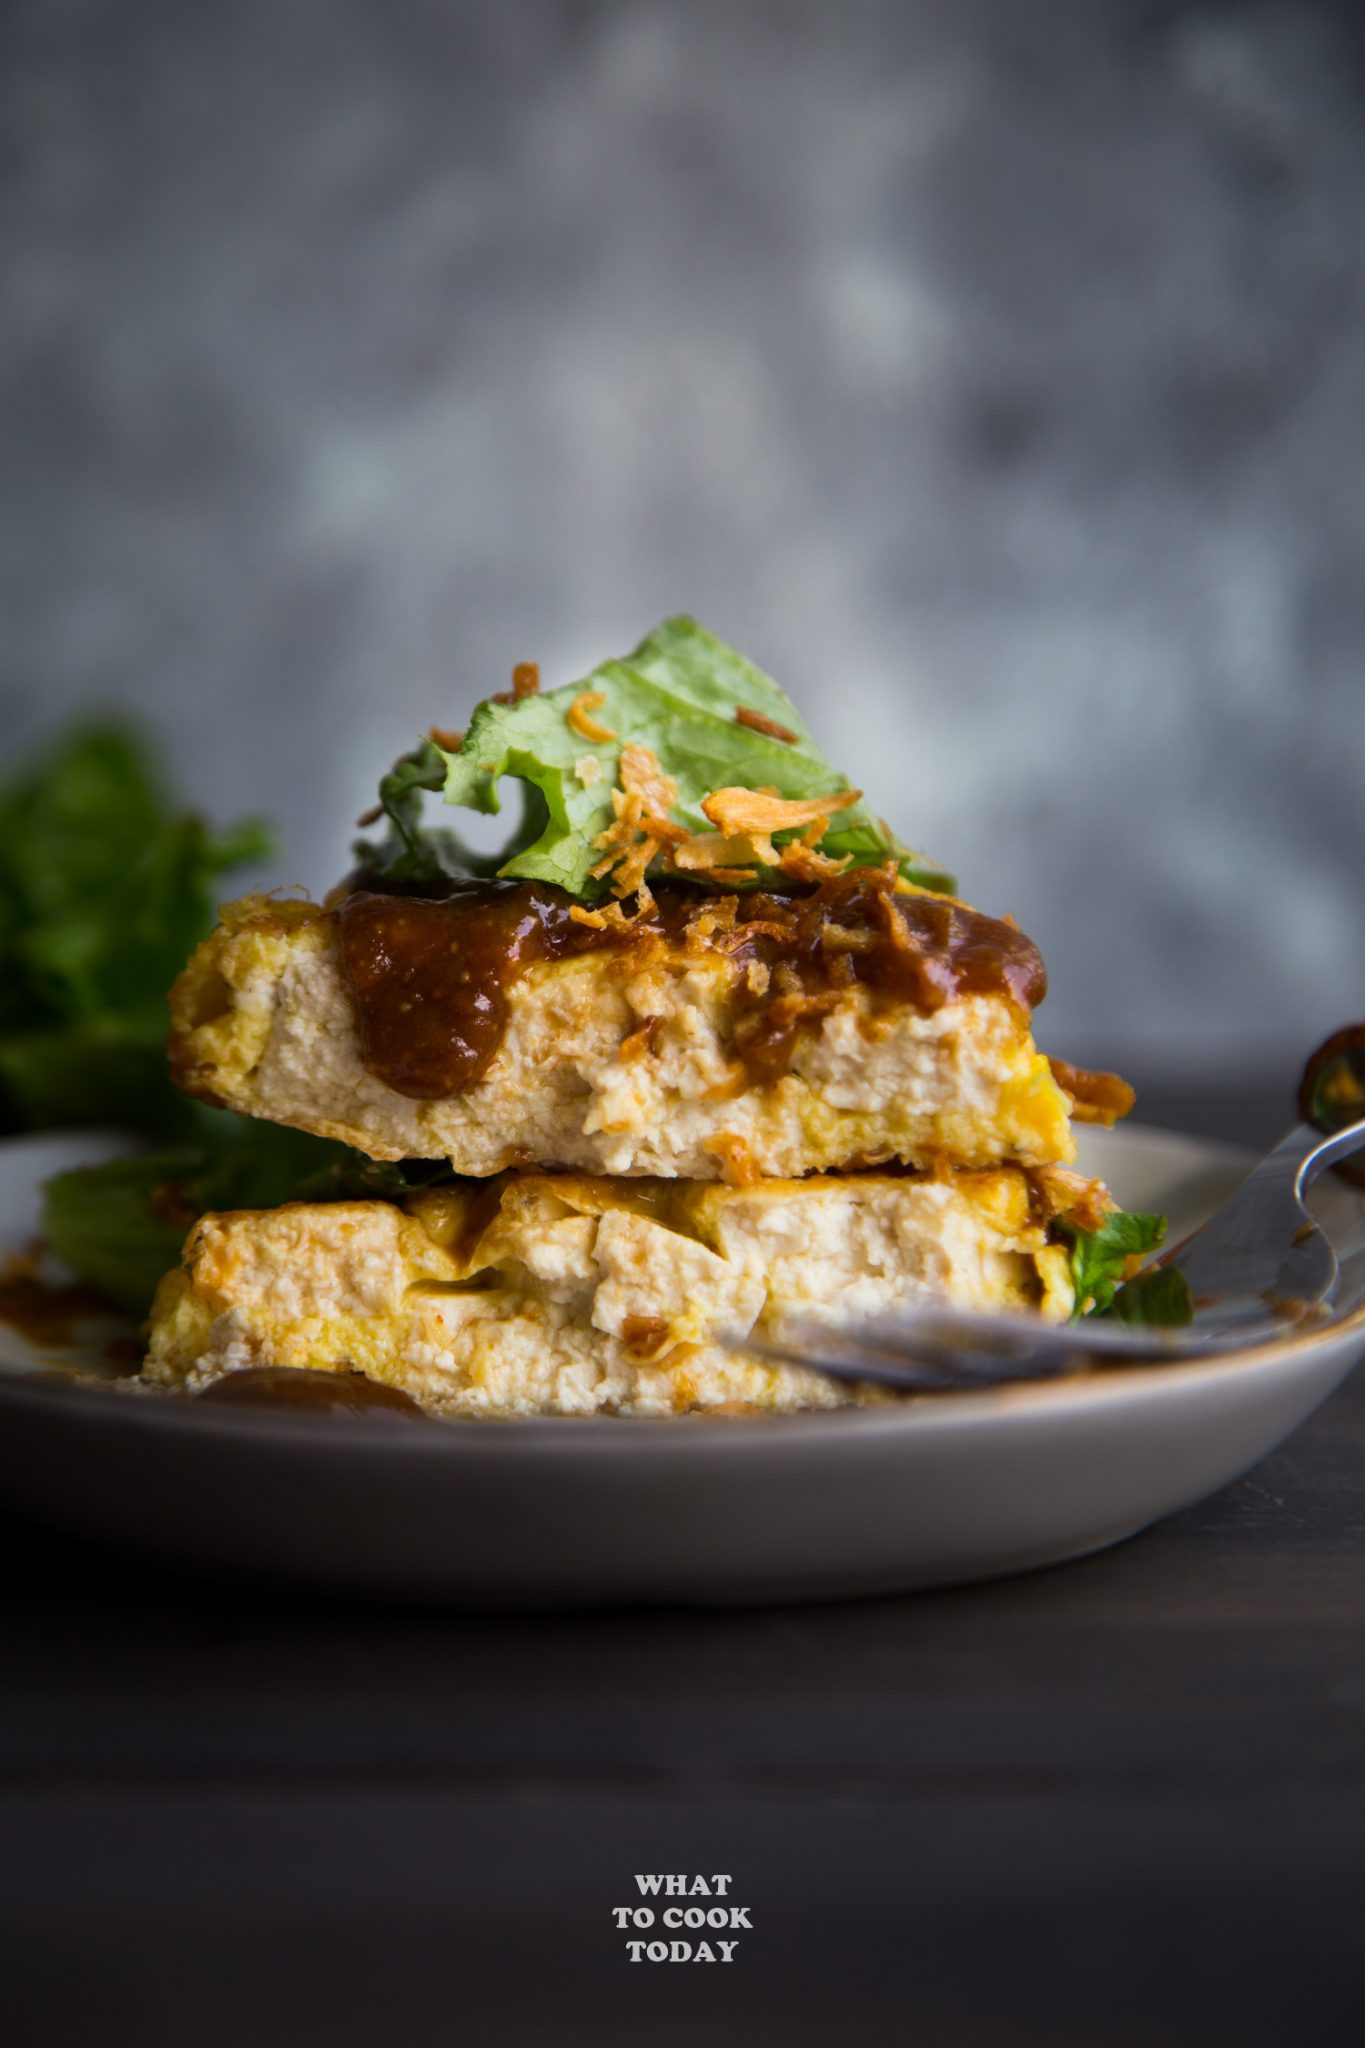 Tahu Telur (Indonesian Tofu Omelette Salad) #tofu #omelet #omelettes #eggs #easyrecipe #indonesianfood